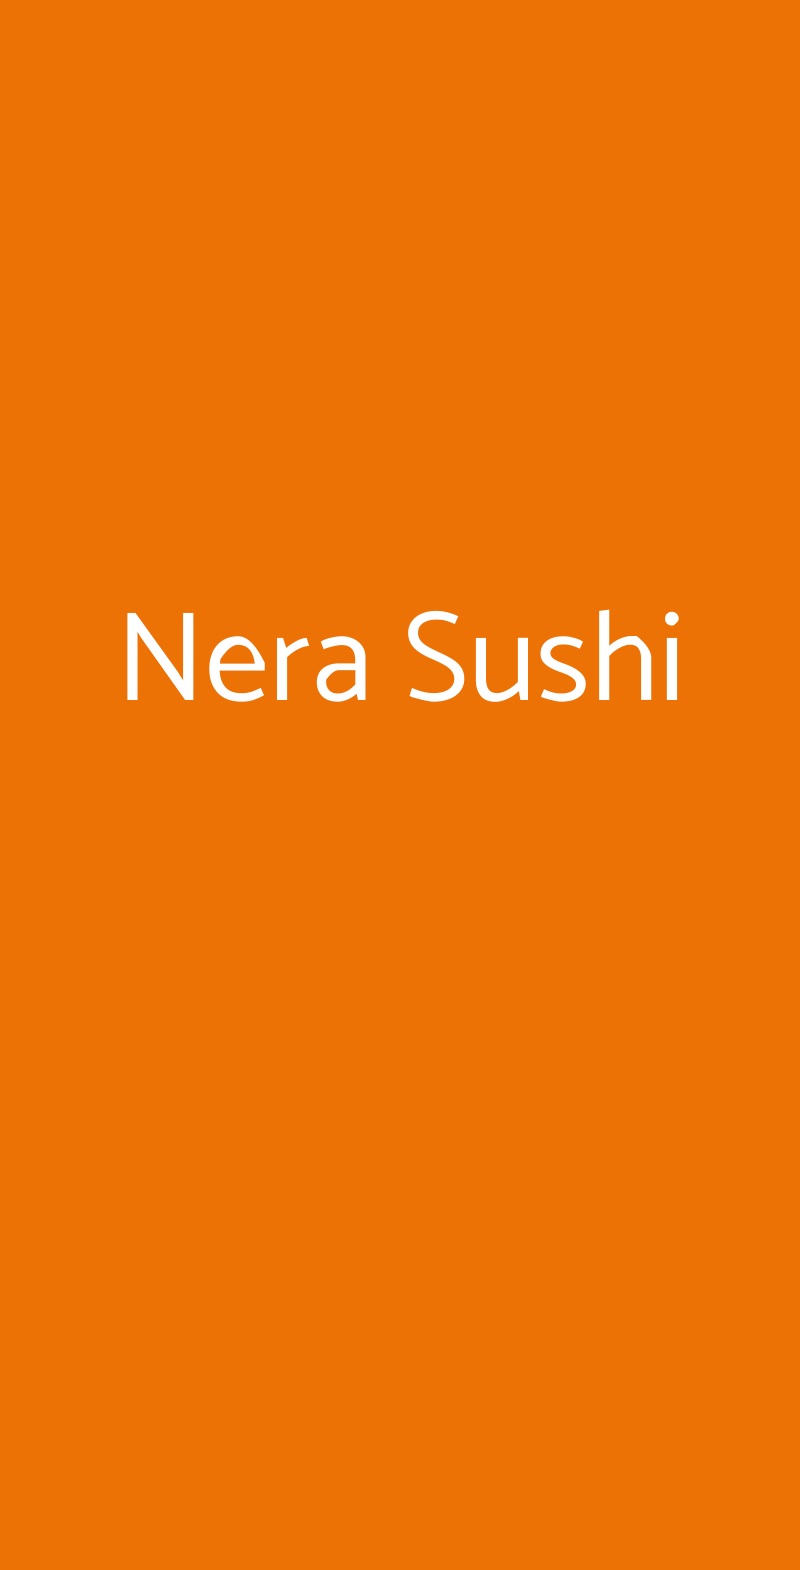 Nera Sushi Milano menù 1 pagina